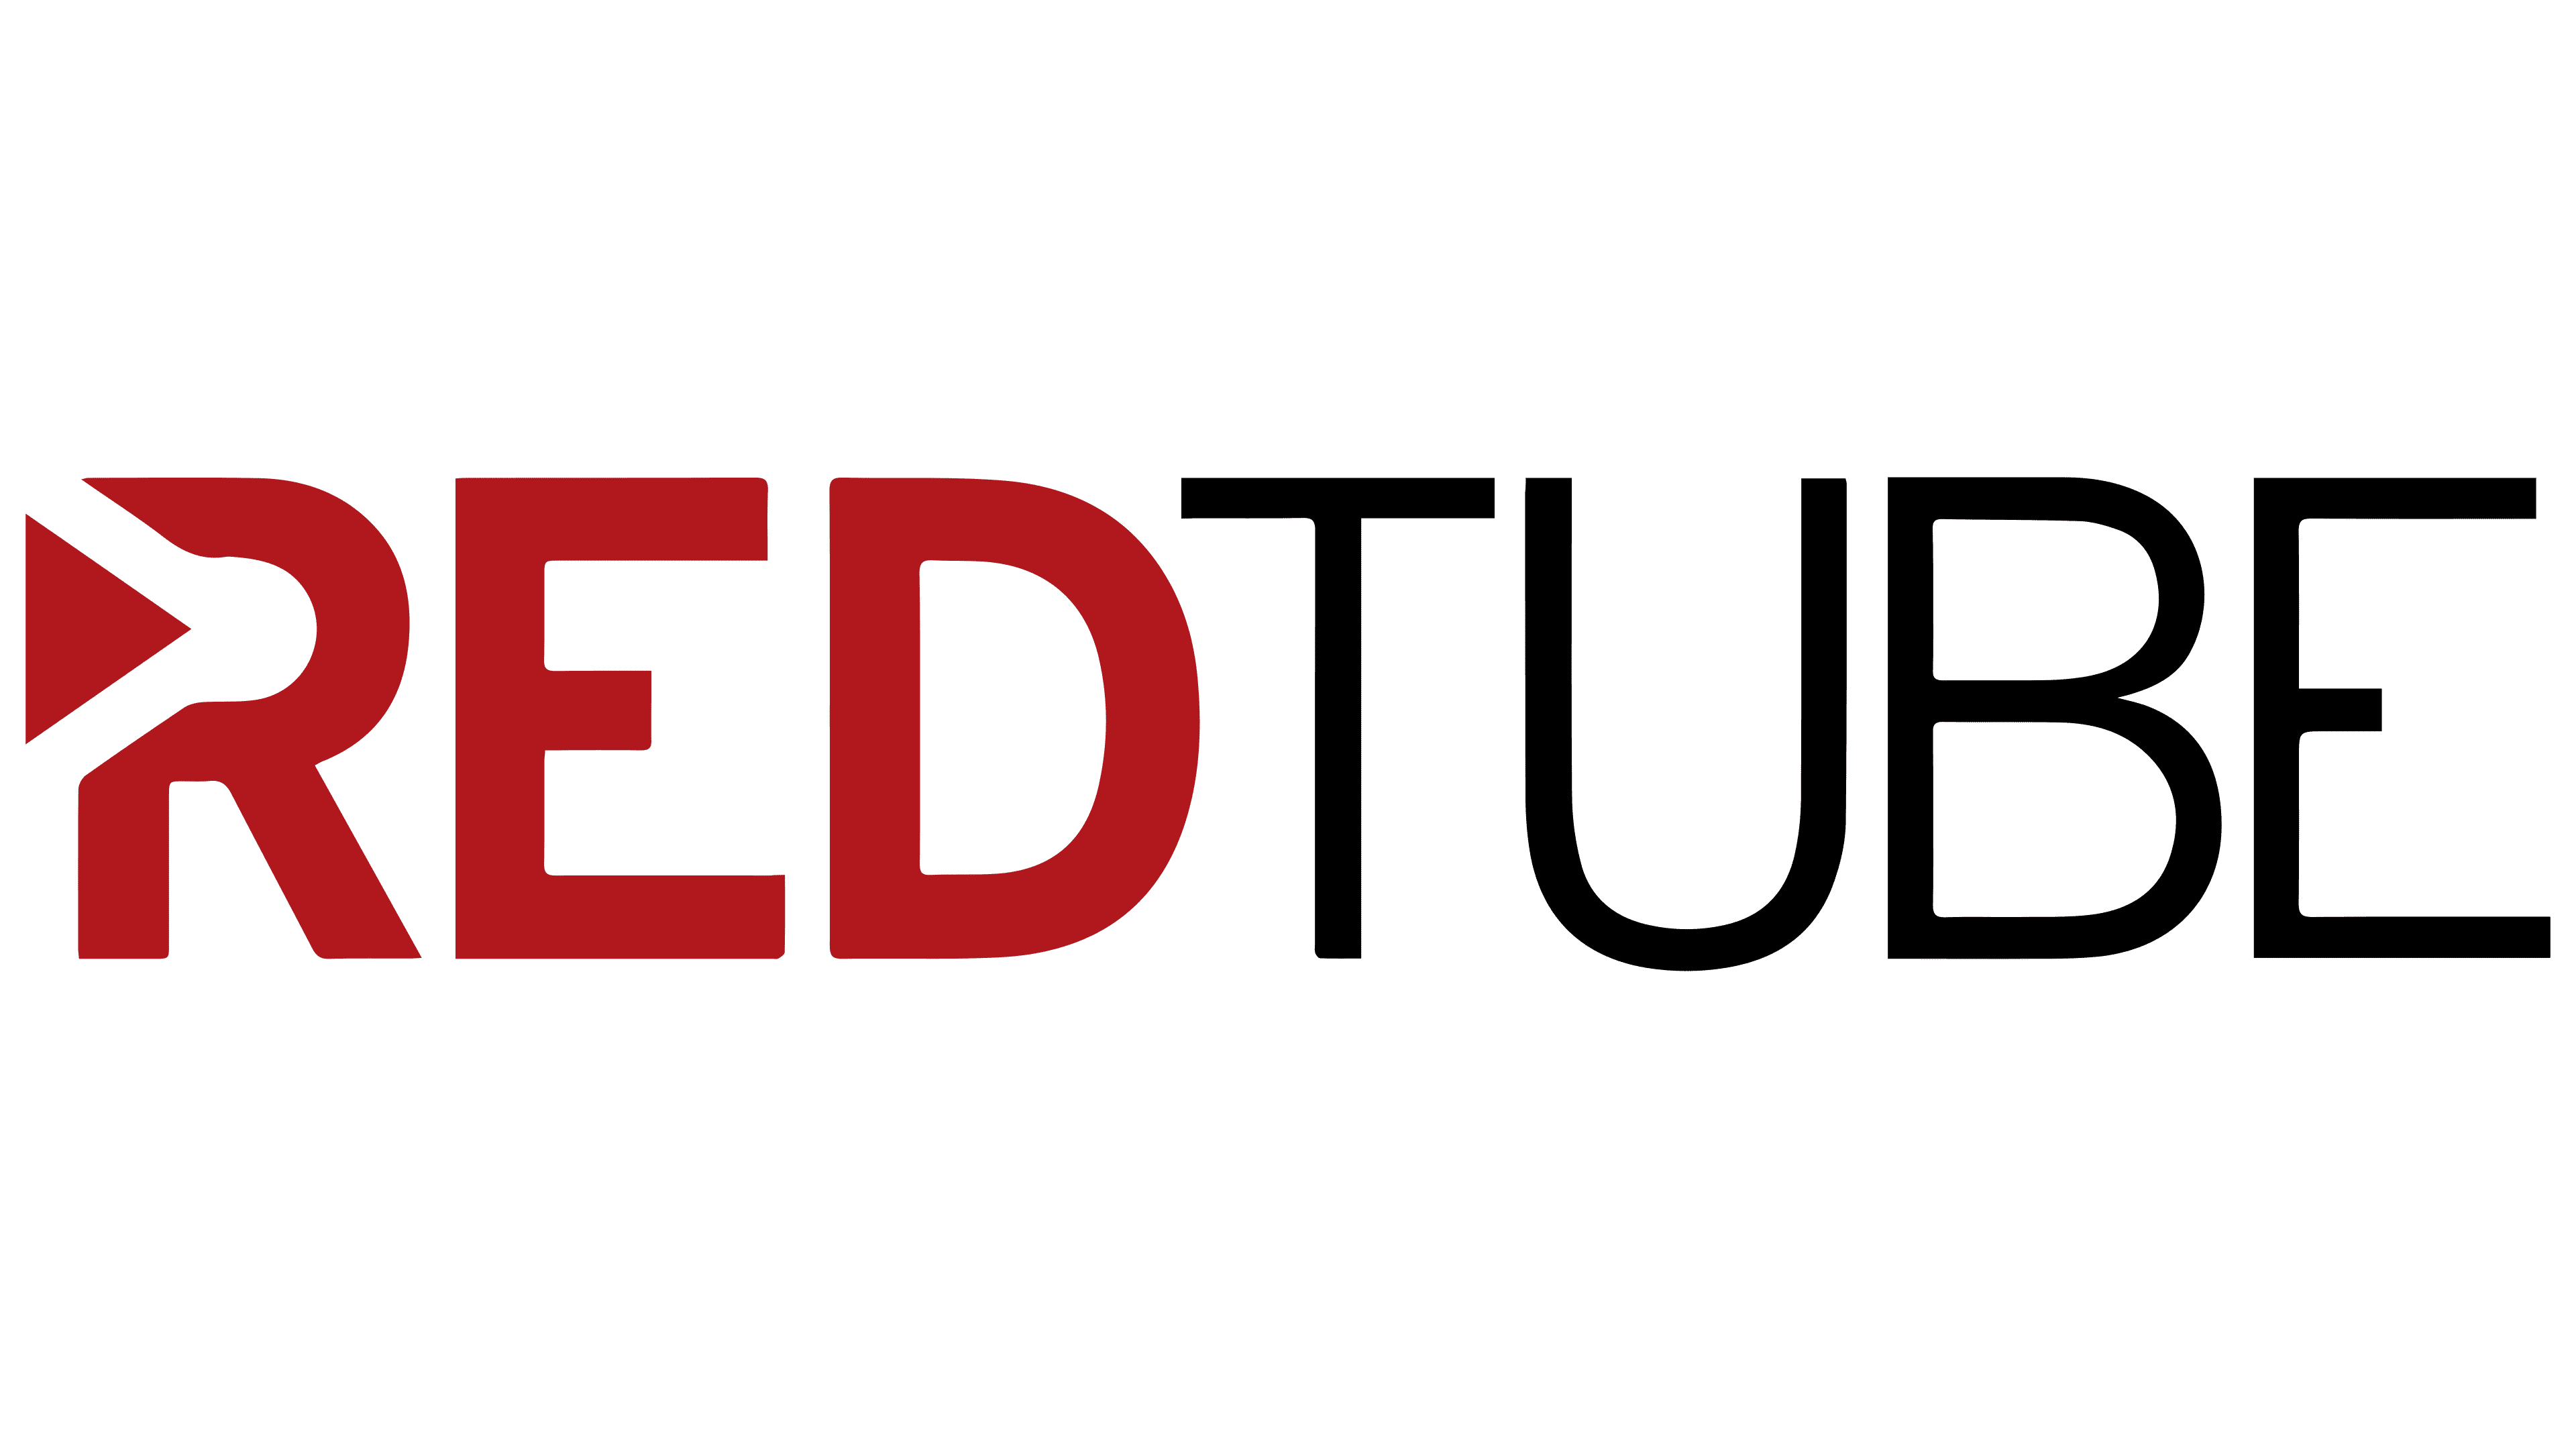 Redtud - RedTube Logo, symbol, meaning, history, PNG, brand